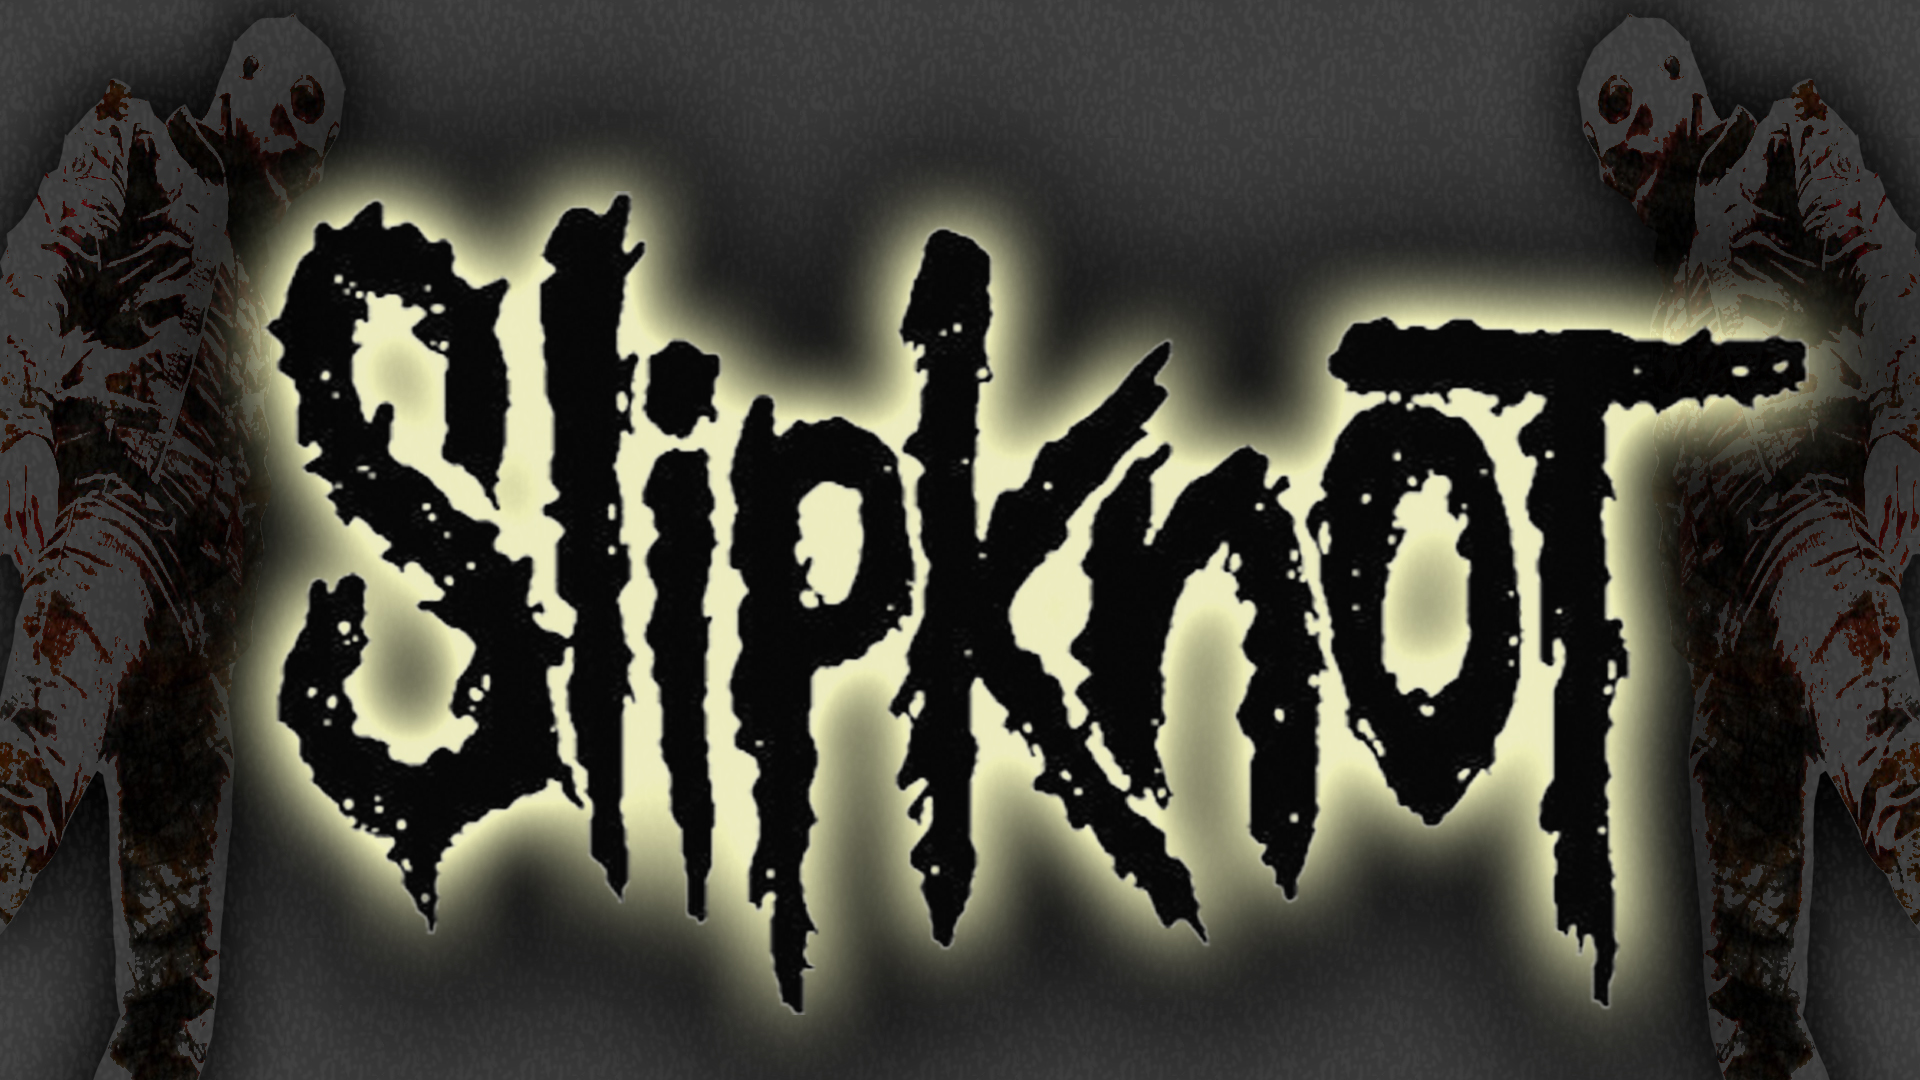 Slipknot Nu Metal Industrial Metal Heavy Metal 1920x1080